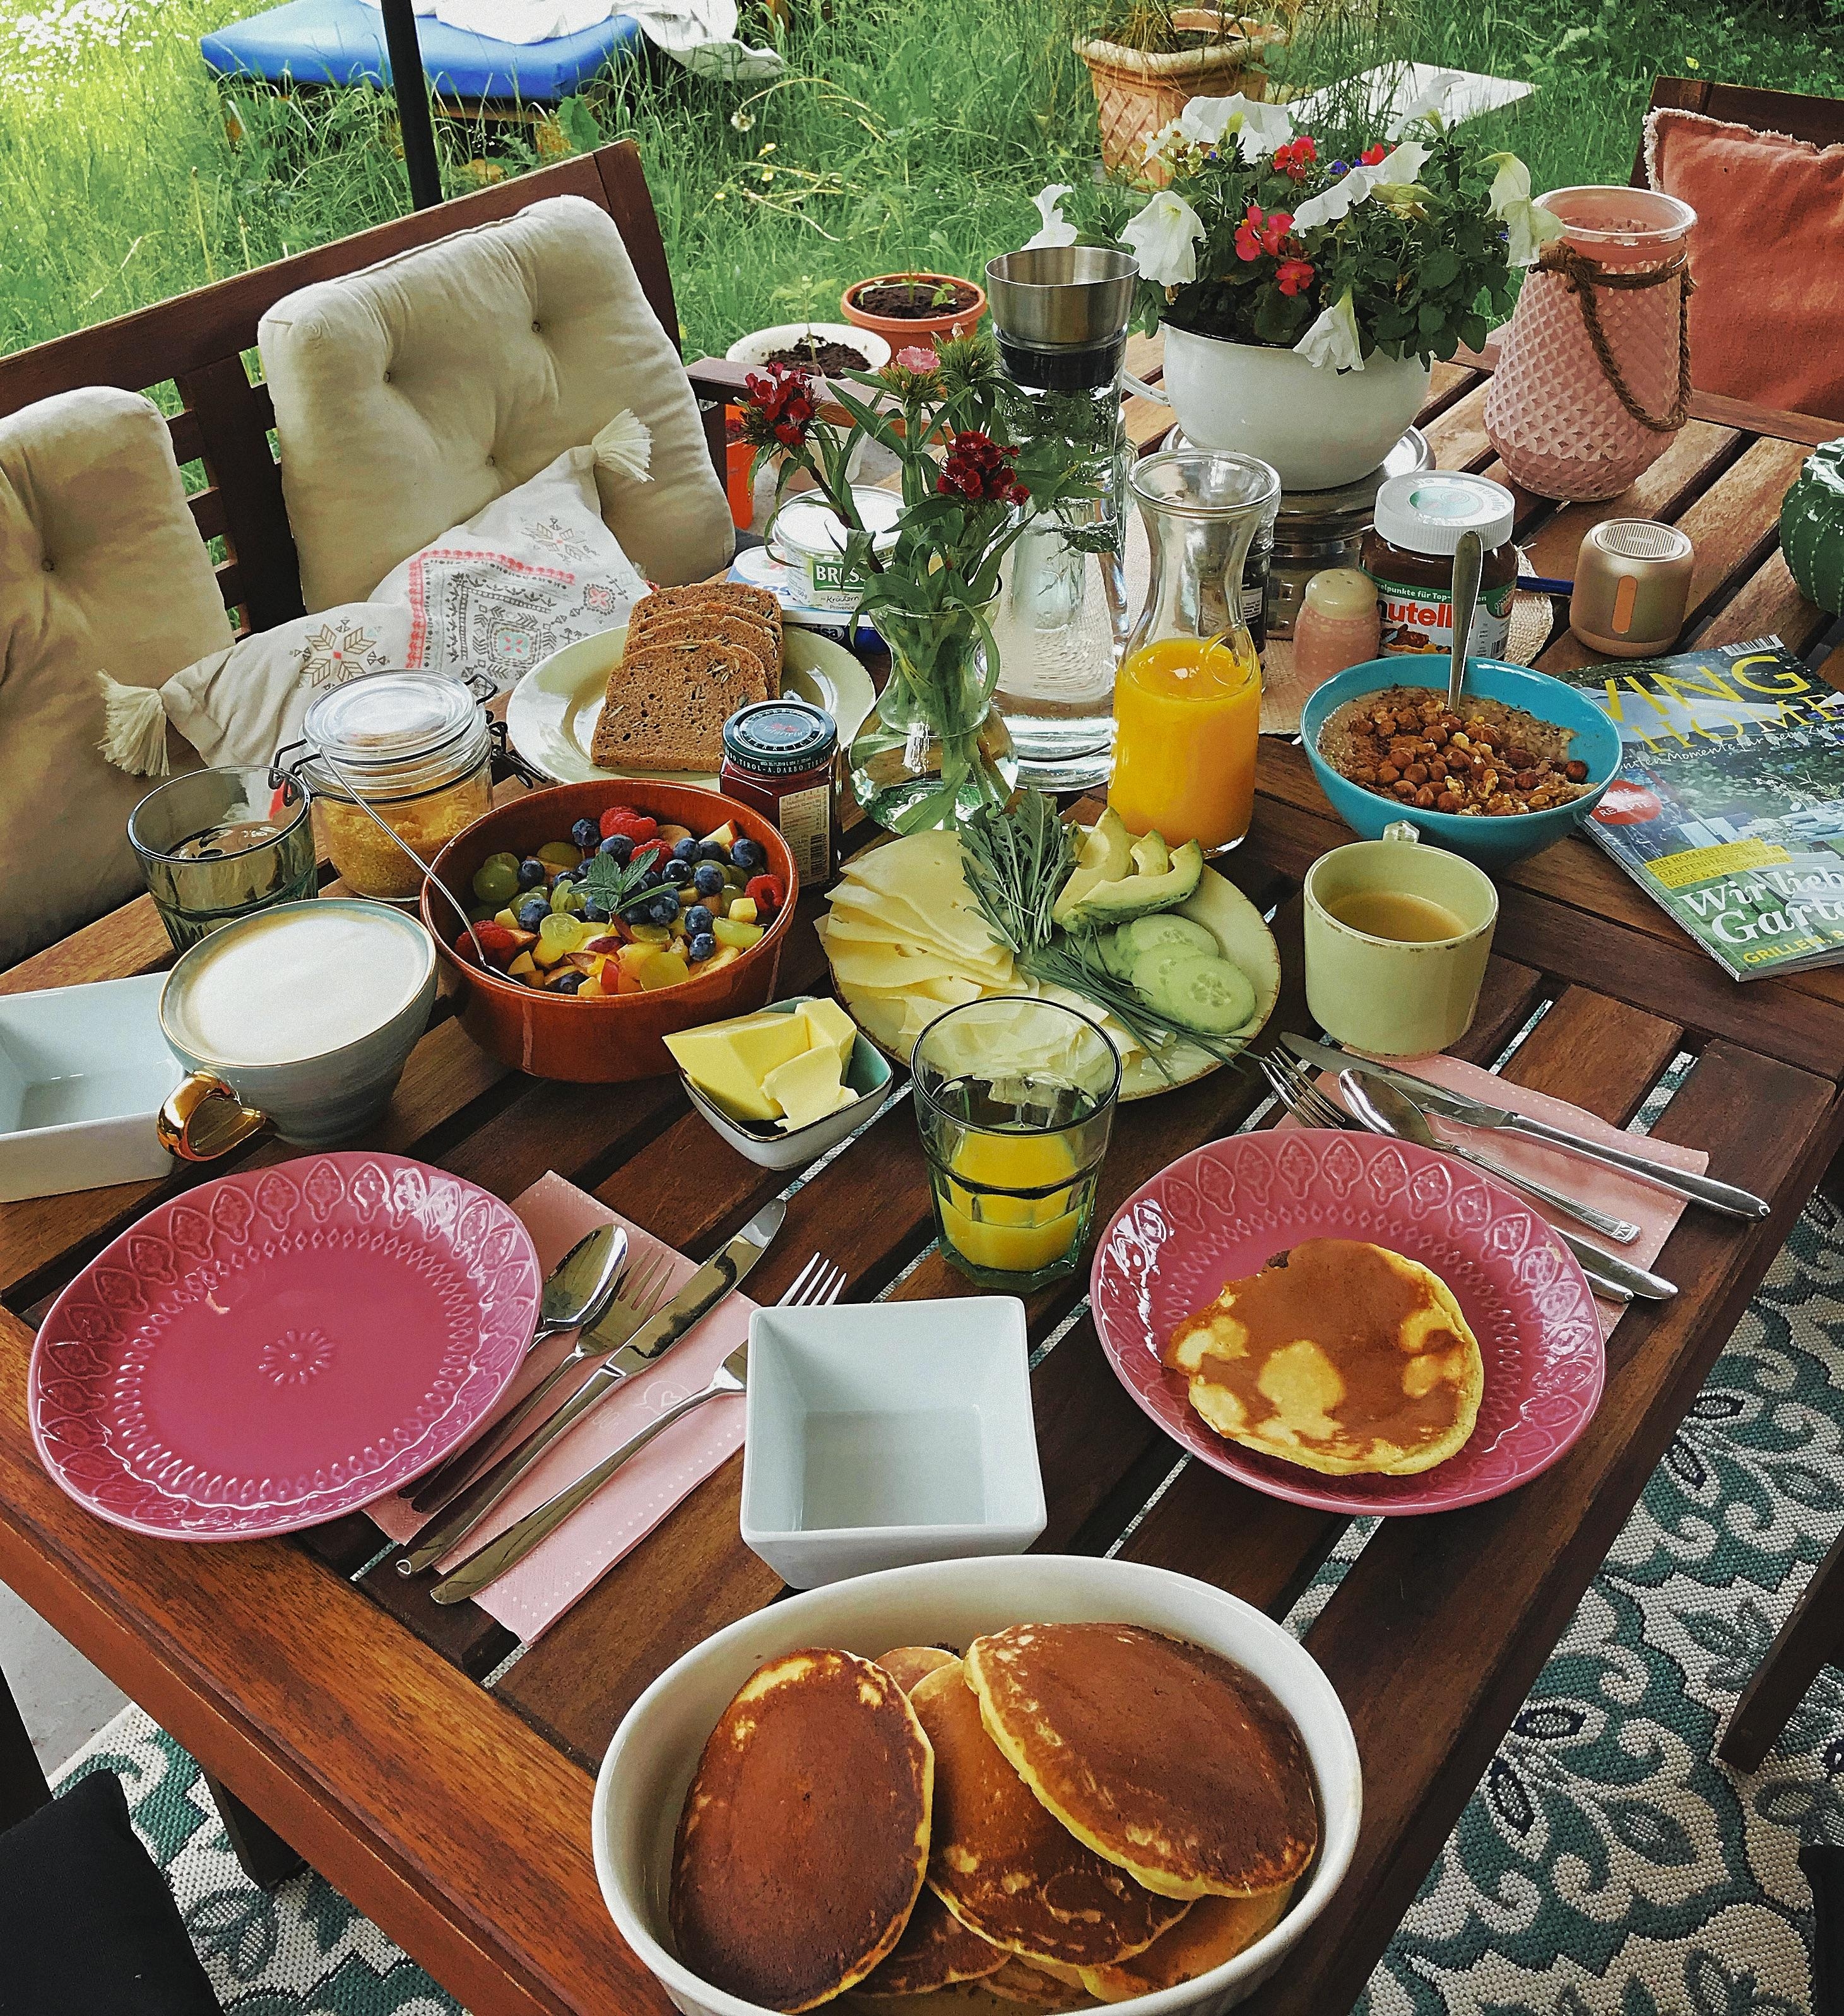 Frühstück für meine Liebsten ❤️
#sunday #breakfast #garden #fruits #pancakes #healthyfood #summervibes